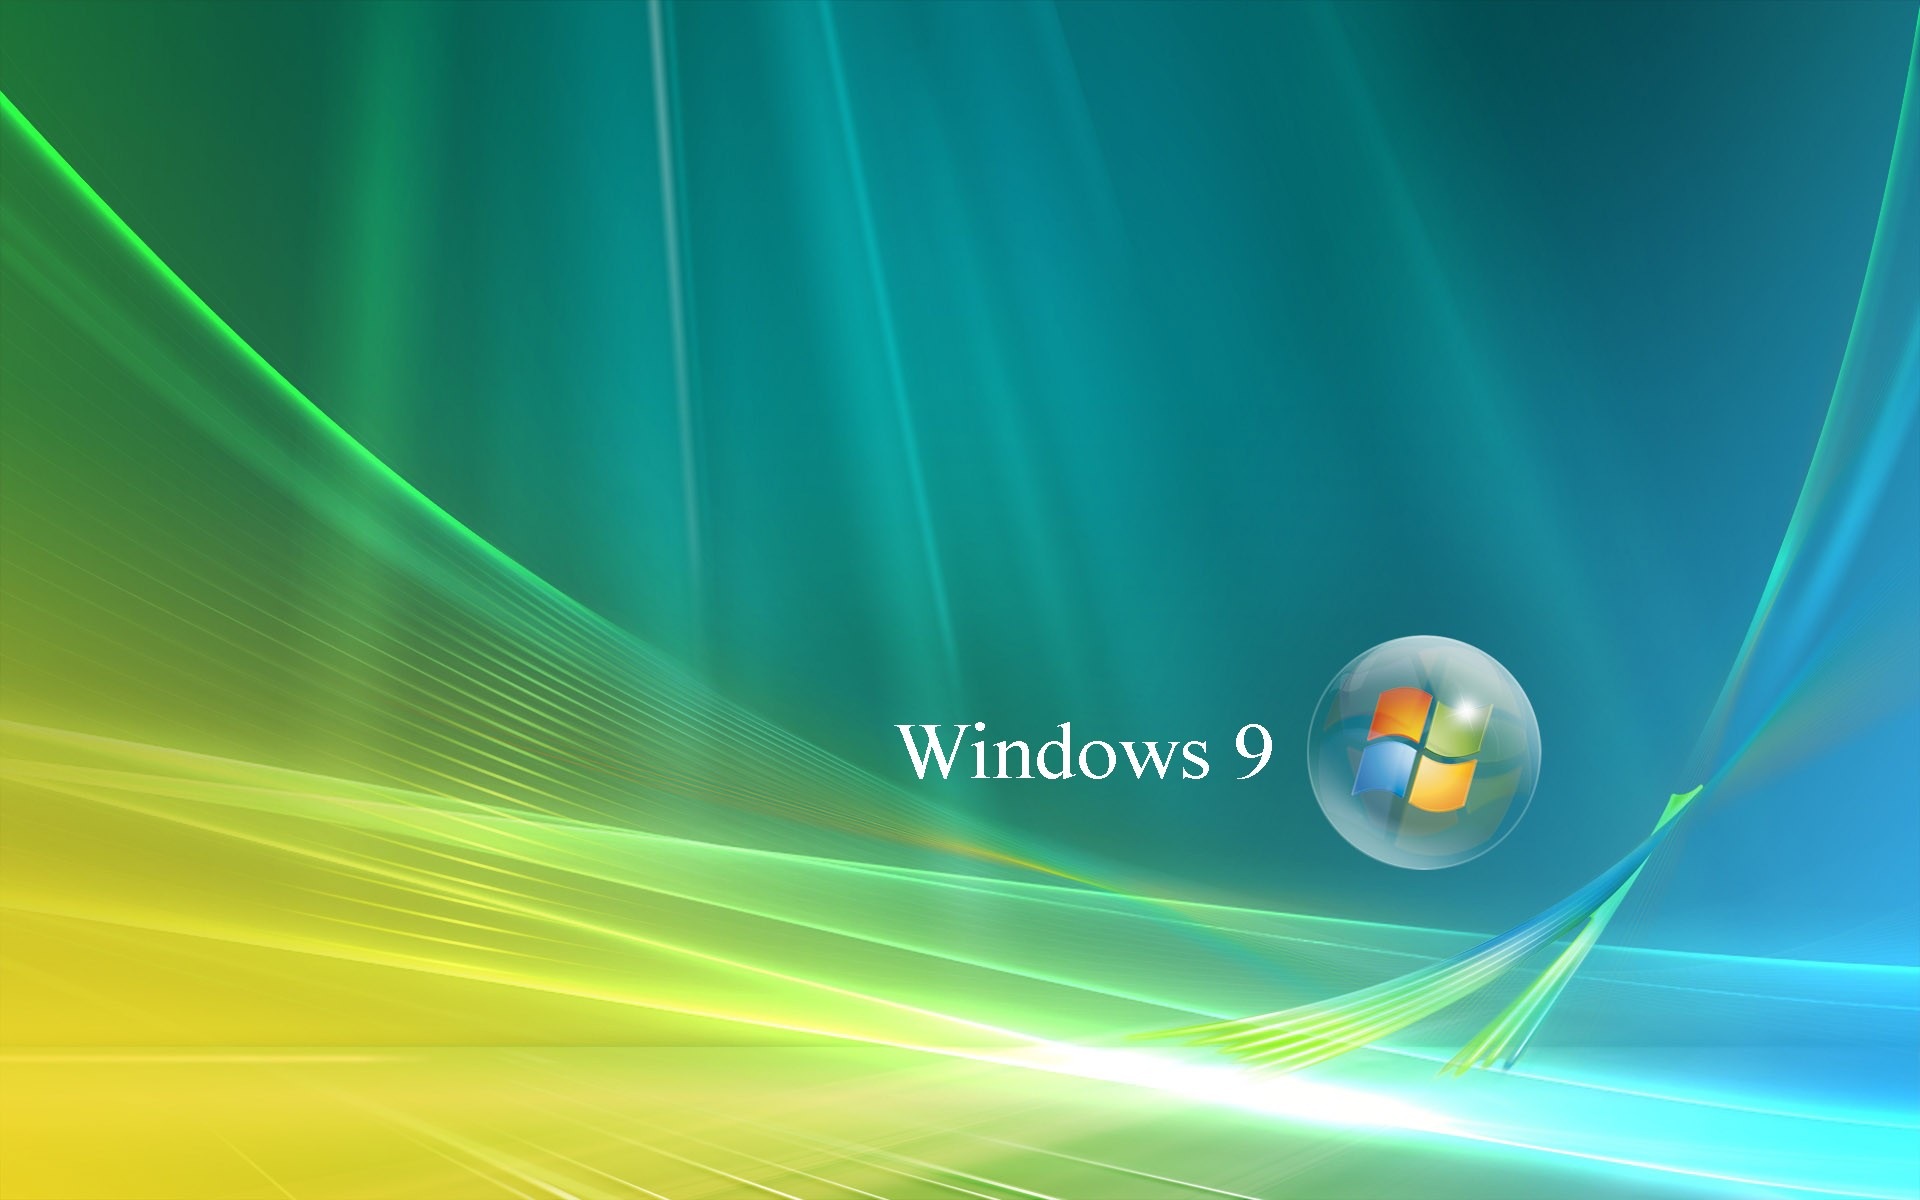 微软 Windows 9 系统主题 高清壁纸20 - 1920x1200